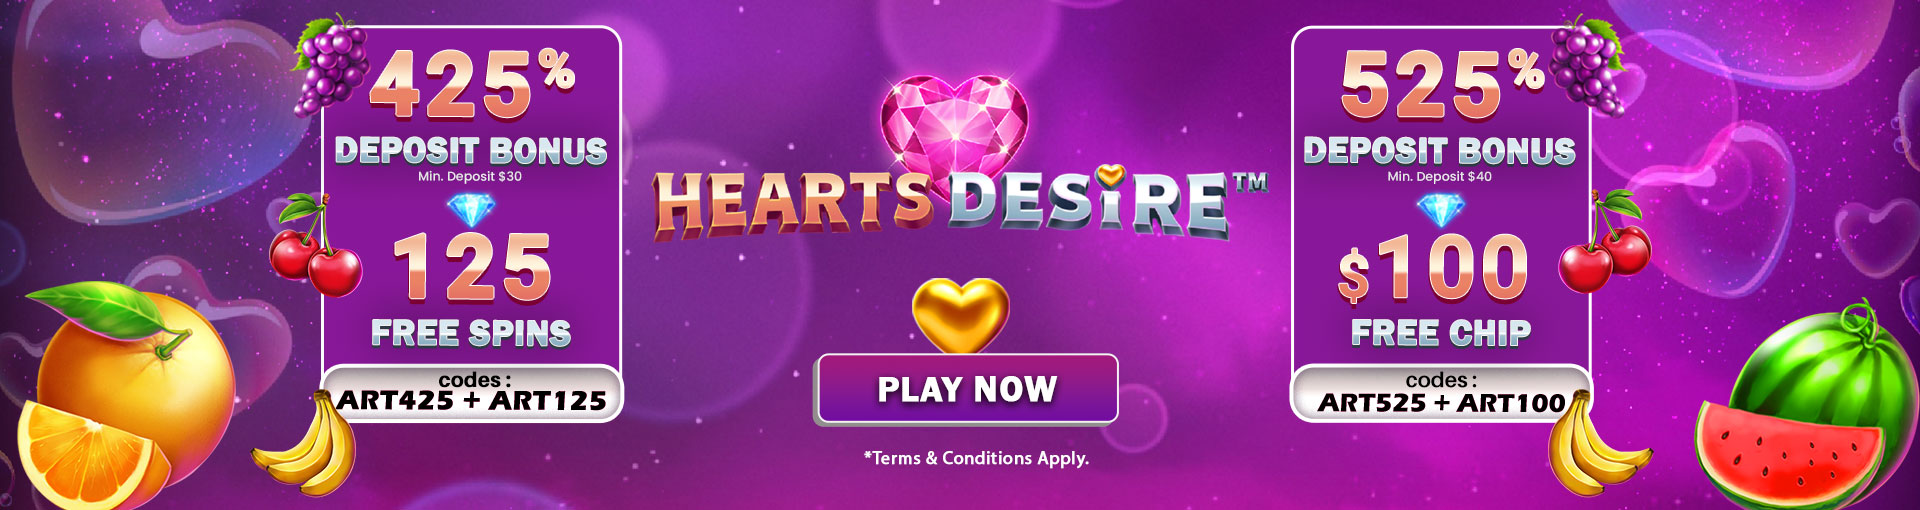 bc_heart_desire